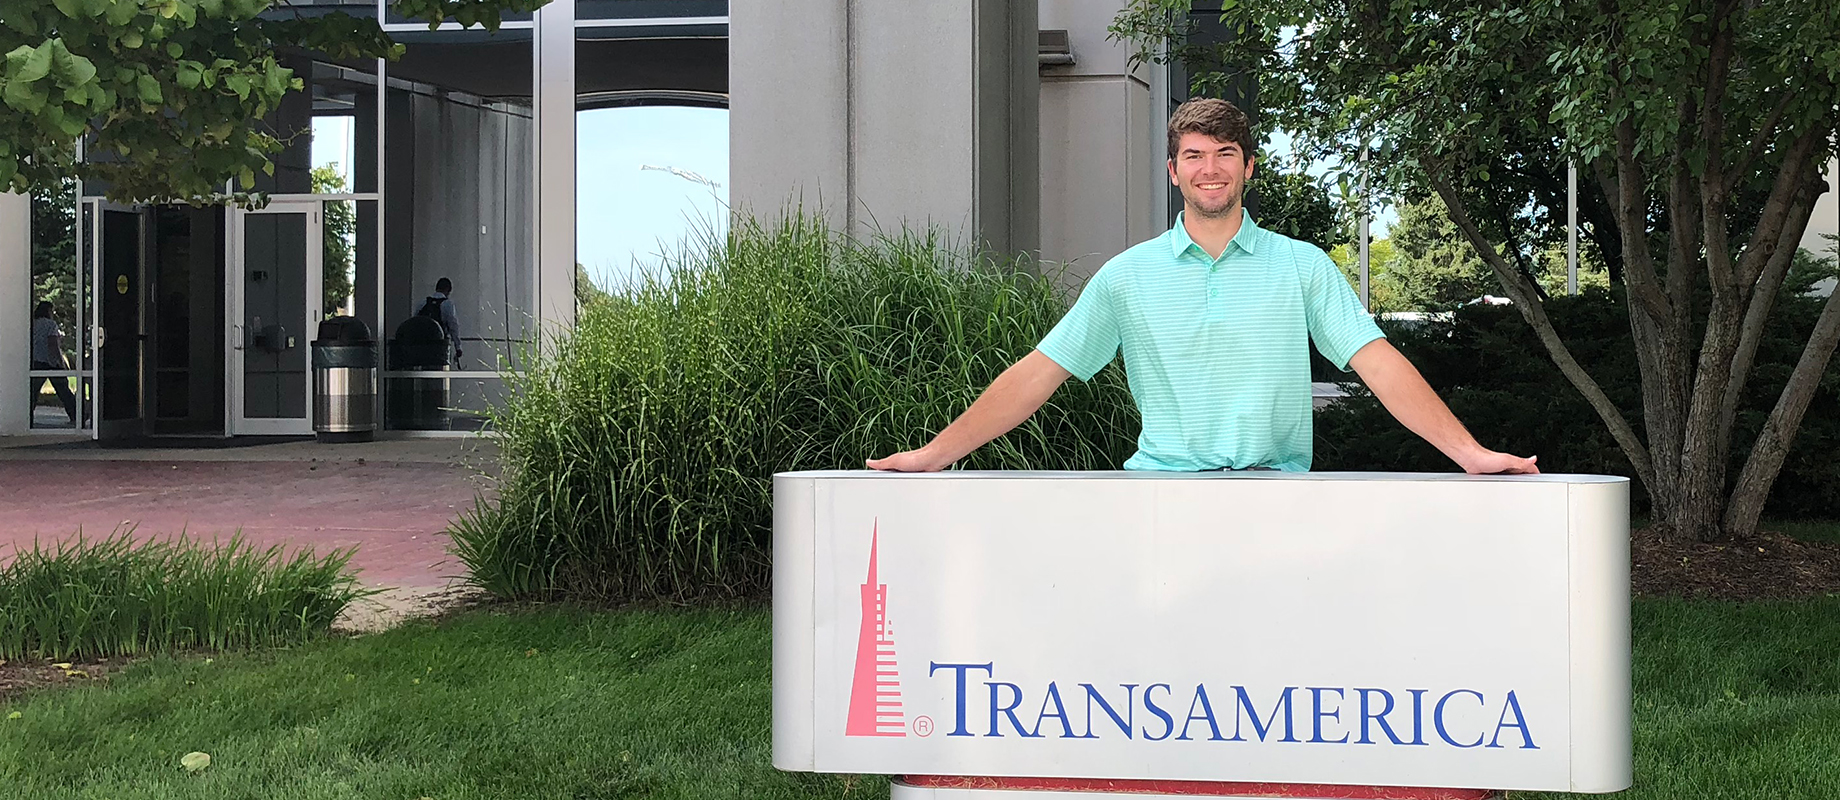 Simpson College graduate Truman Schmitt poses at Transamerica